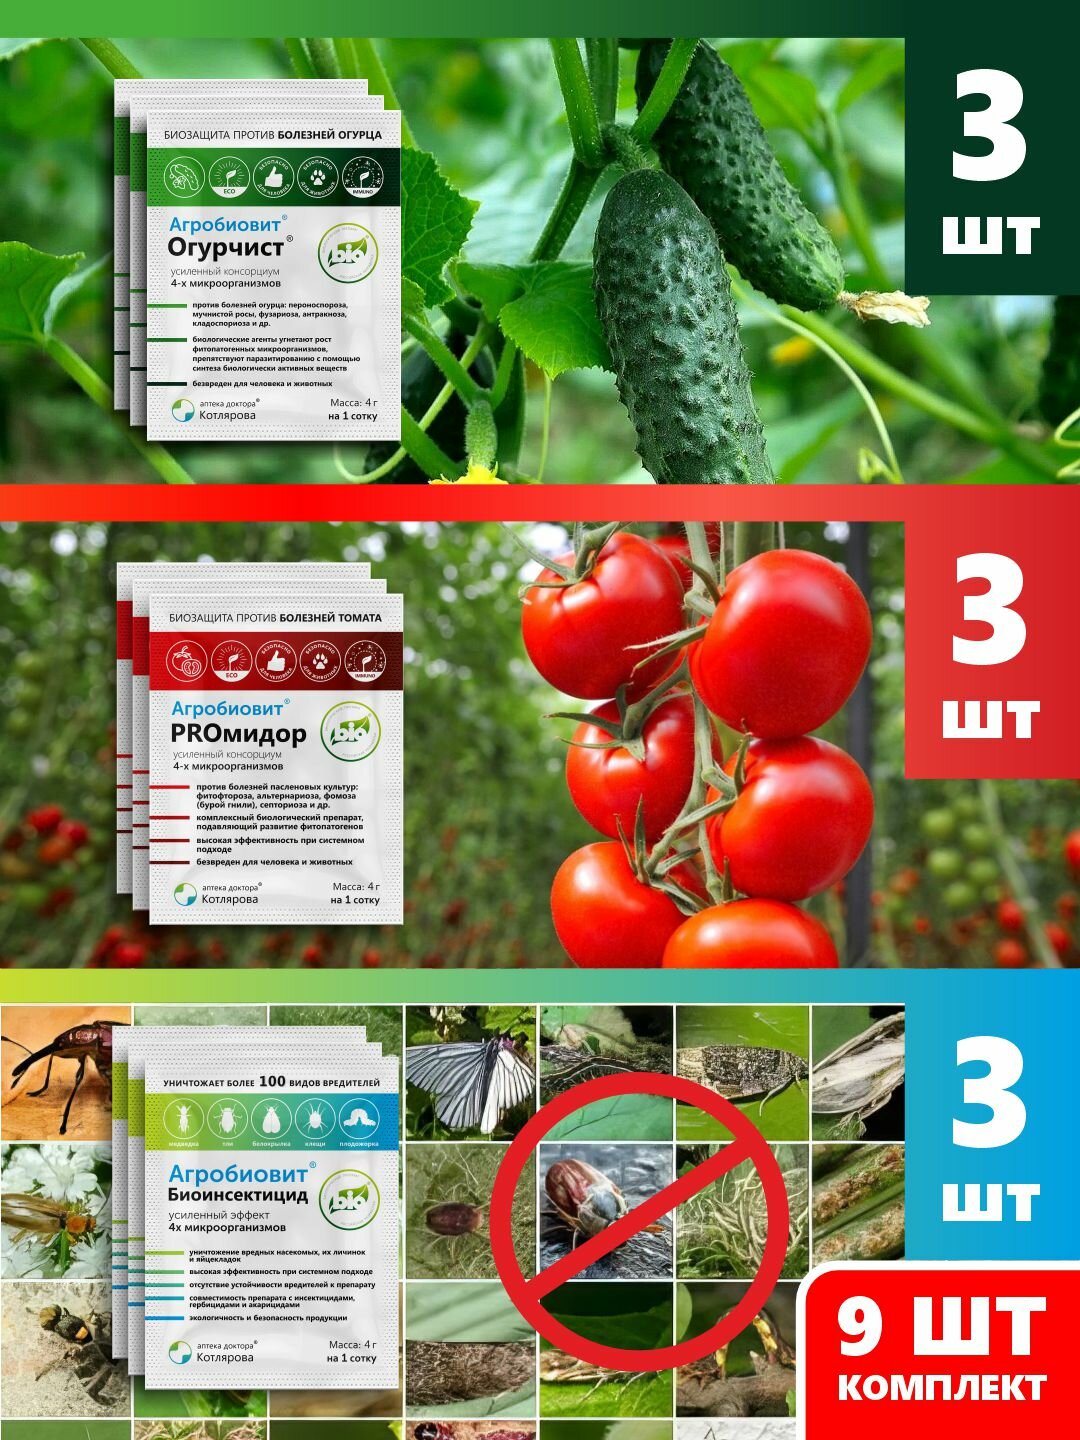 Комплекс для томатов и огурцов: защита от болезней и насекомых и стимуляция роста, 3 комплекта.